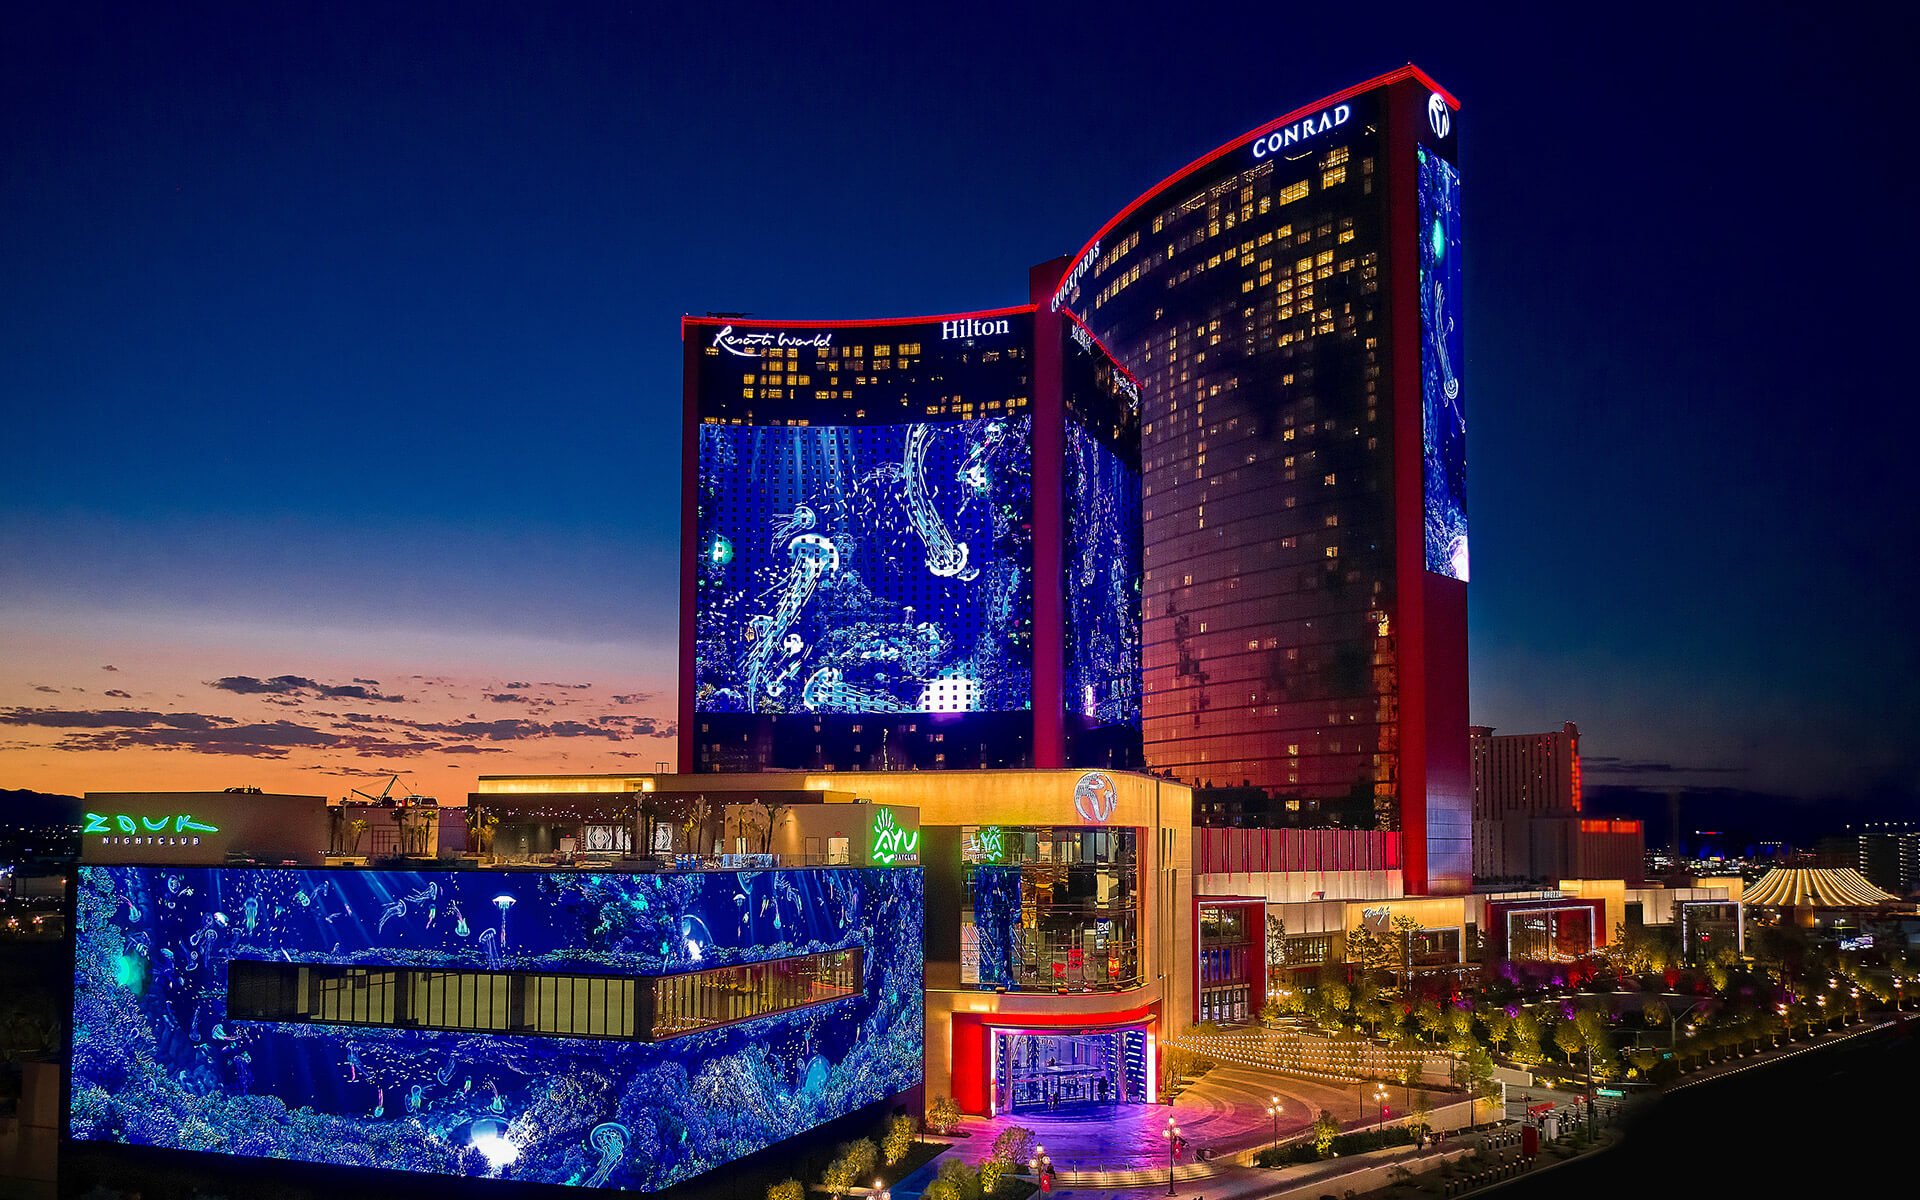 Main Pool Resorts World Las Vegas